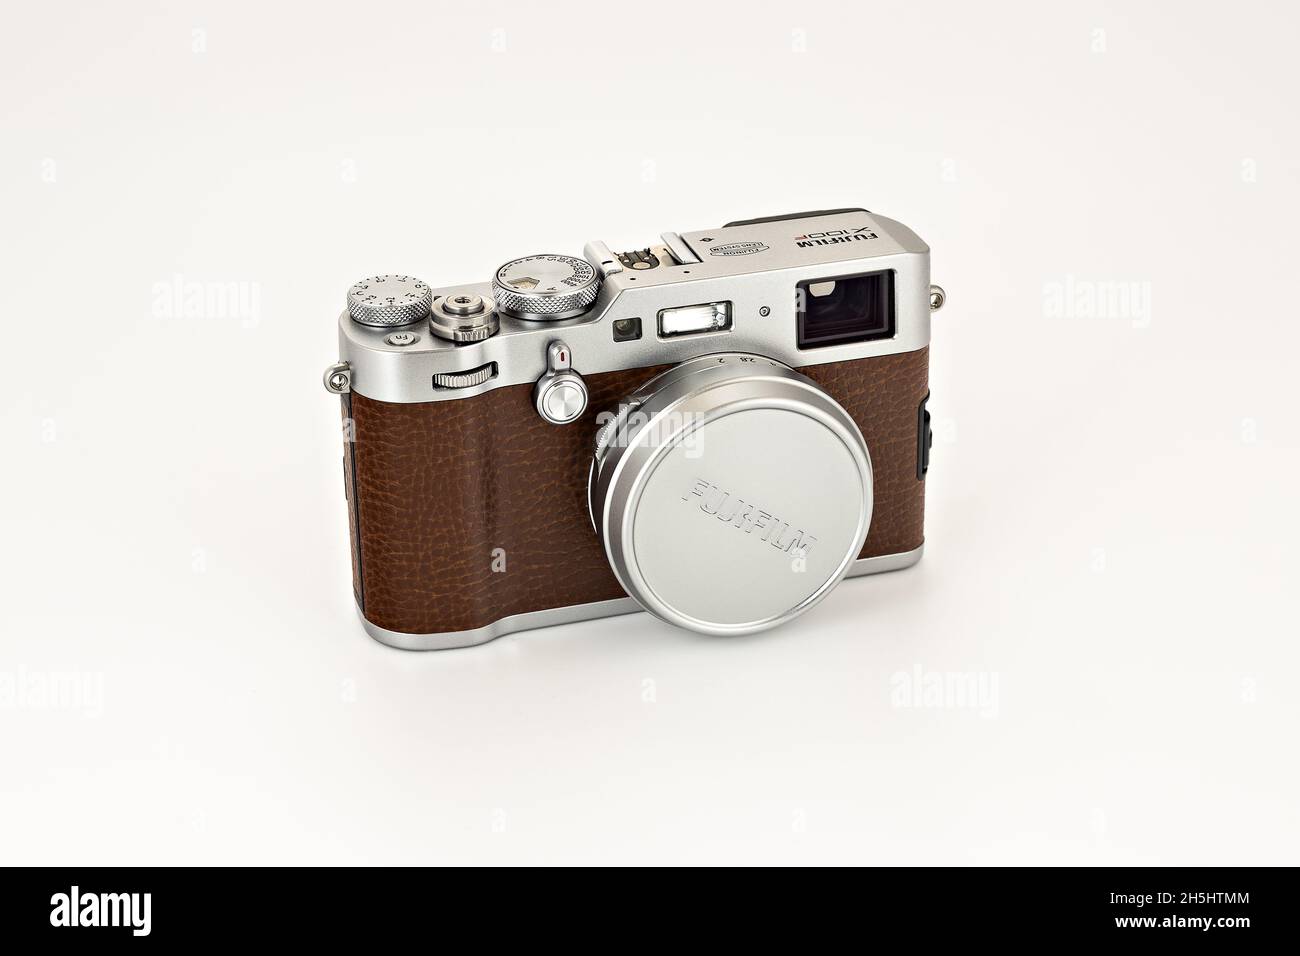 カメラ デジタルカメラ Fuji x100 hi-res stock photography and images - Alamy